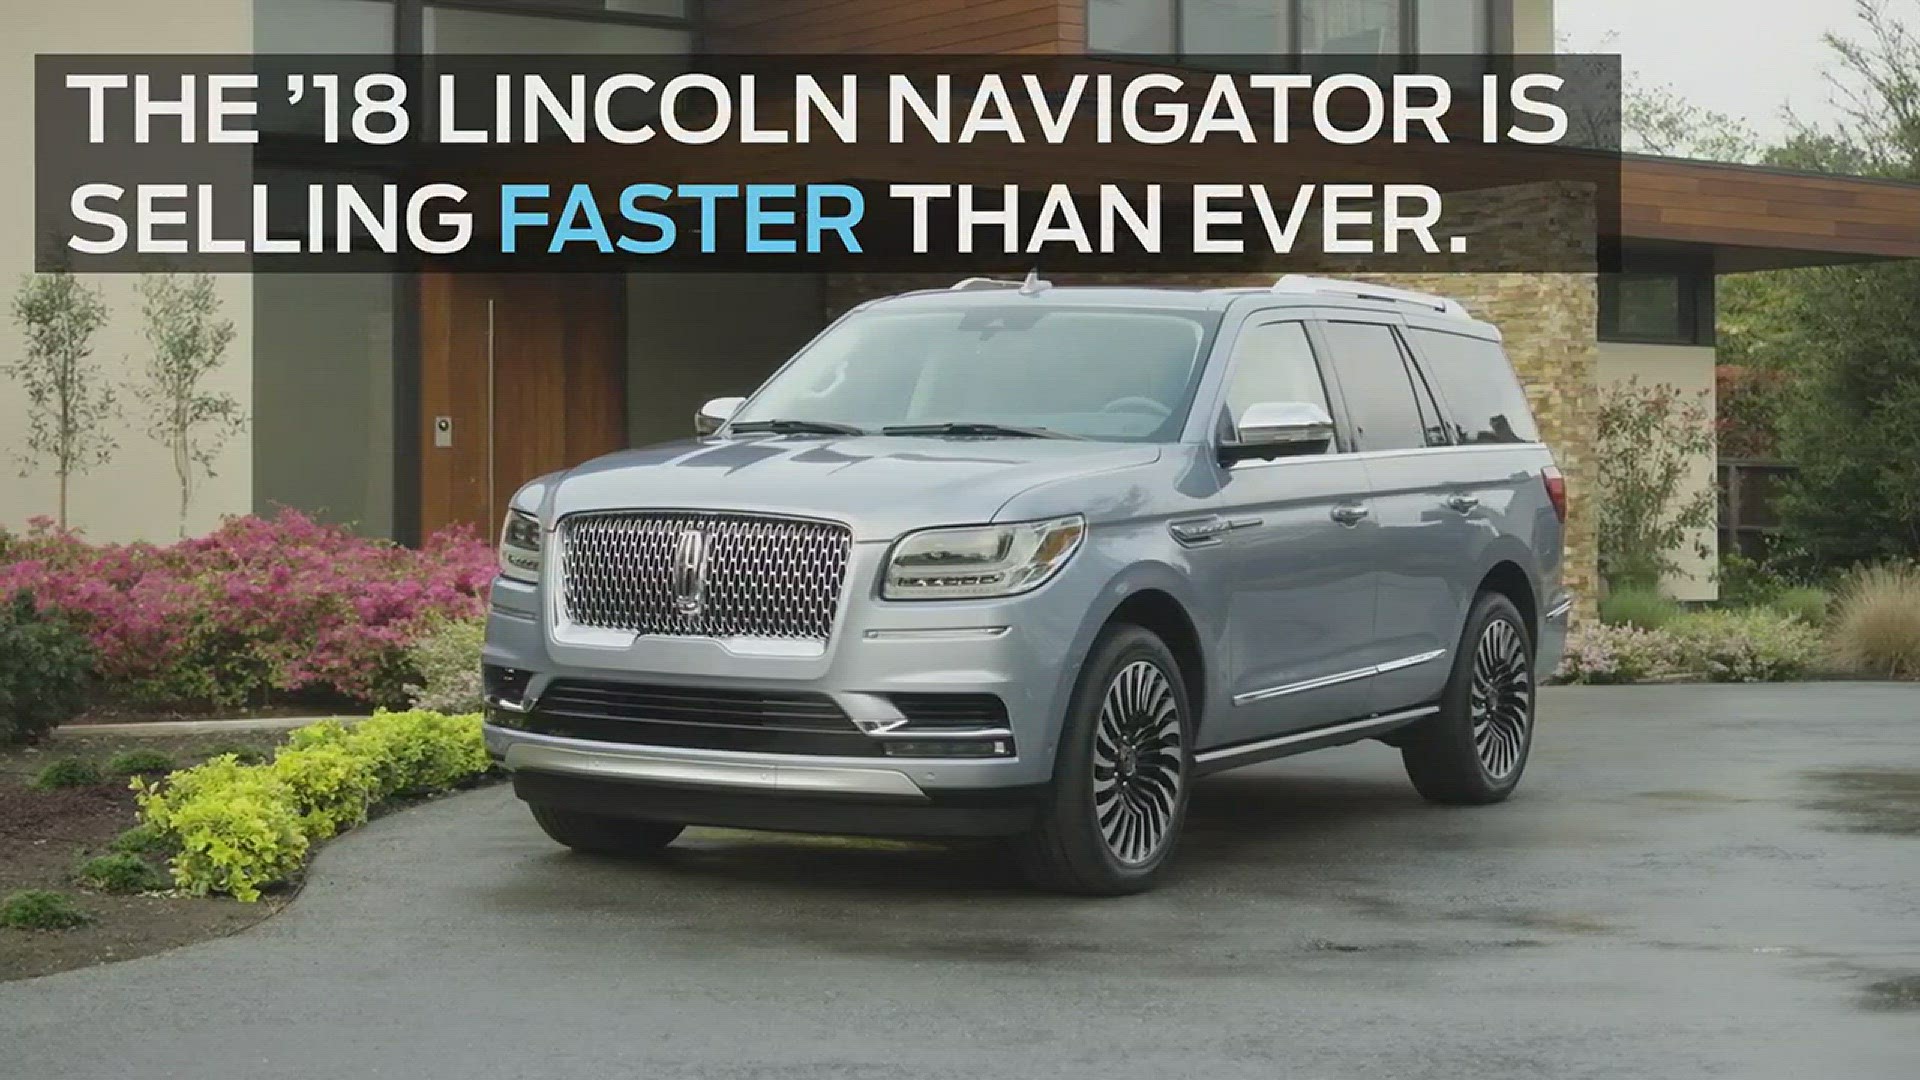 Eighty-five percent of Navigator sales top $81,205.